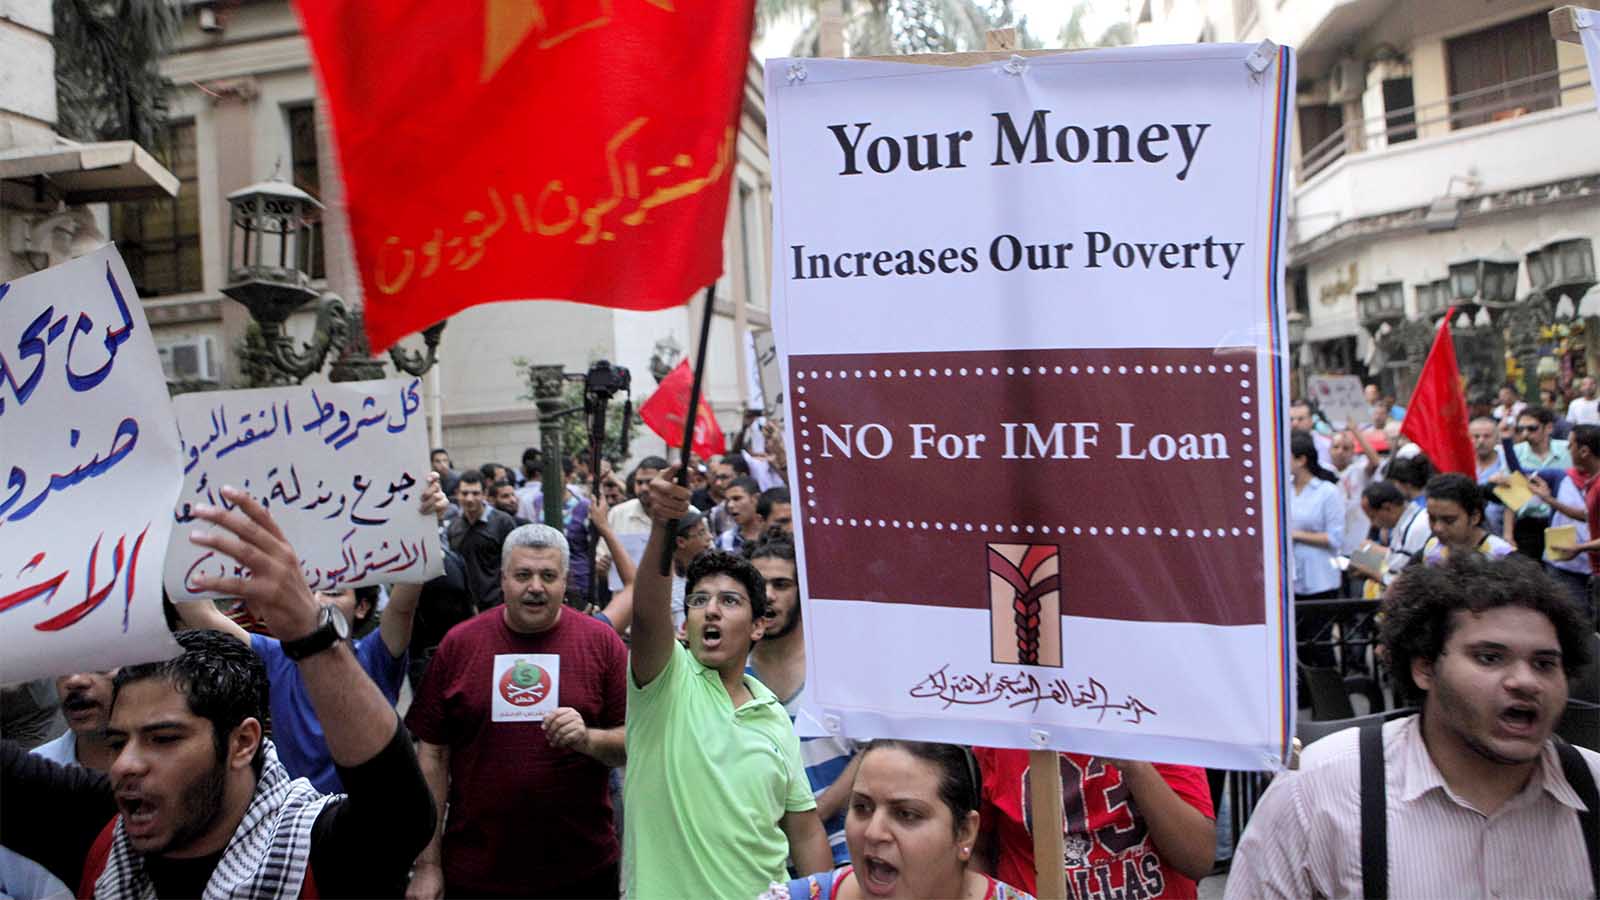 مواطنون مصريون يتظاهرون في القاهرة ضد صندوق النقد الدولي وسياسة إقراضها، بعد أن طلبت مصر من الصندوق قرض في آب 2012 (AP Photo/Amr Nabil)